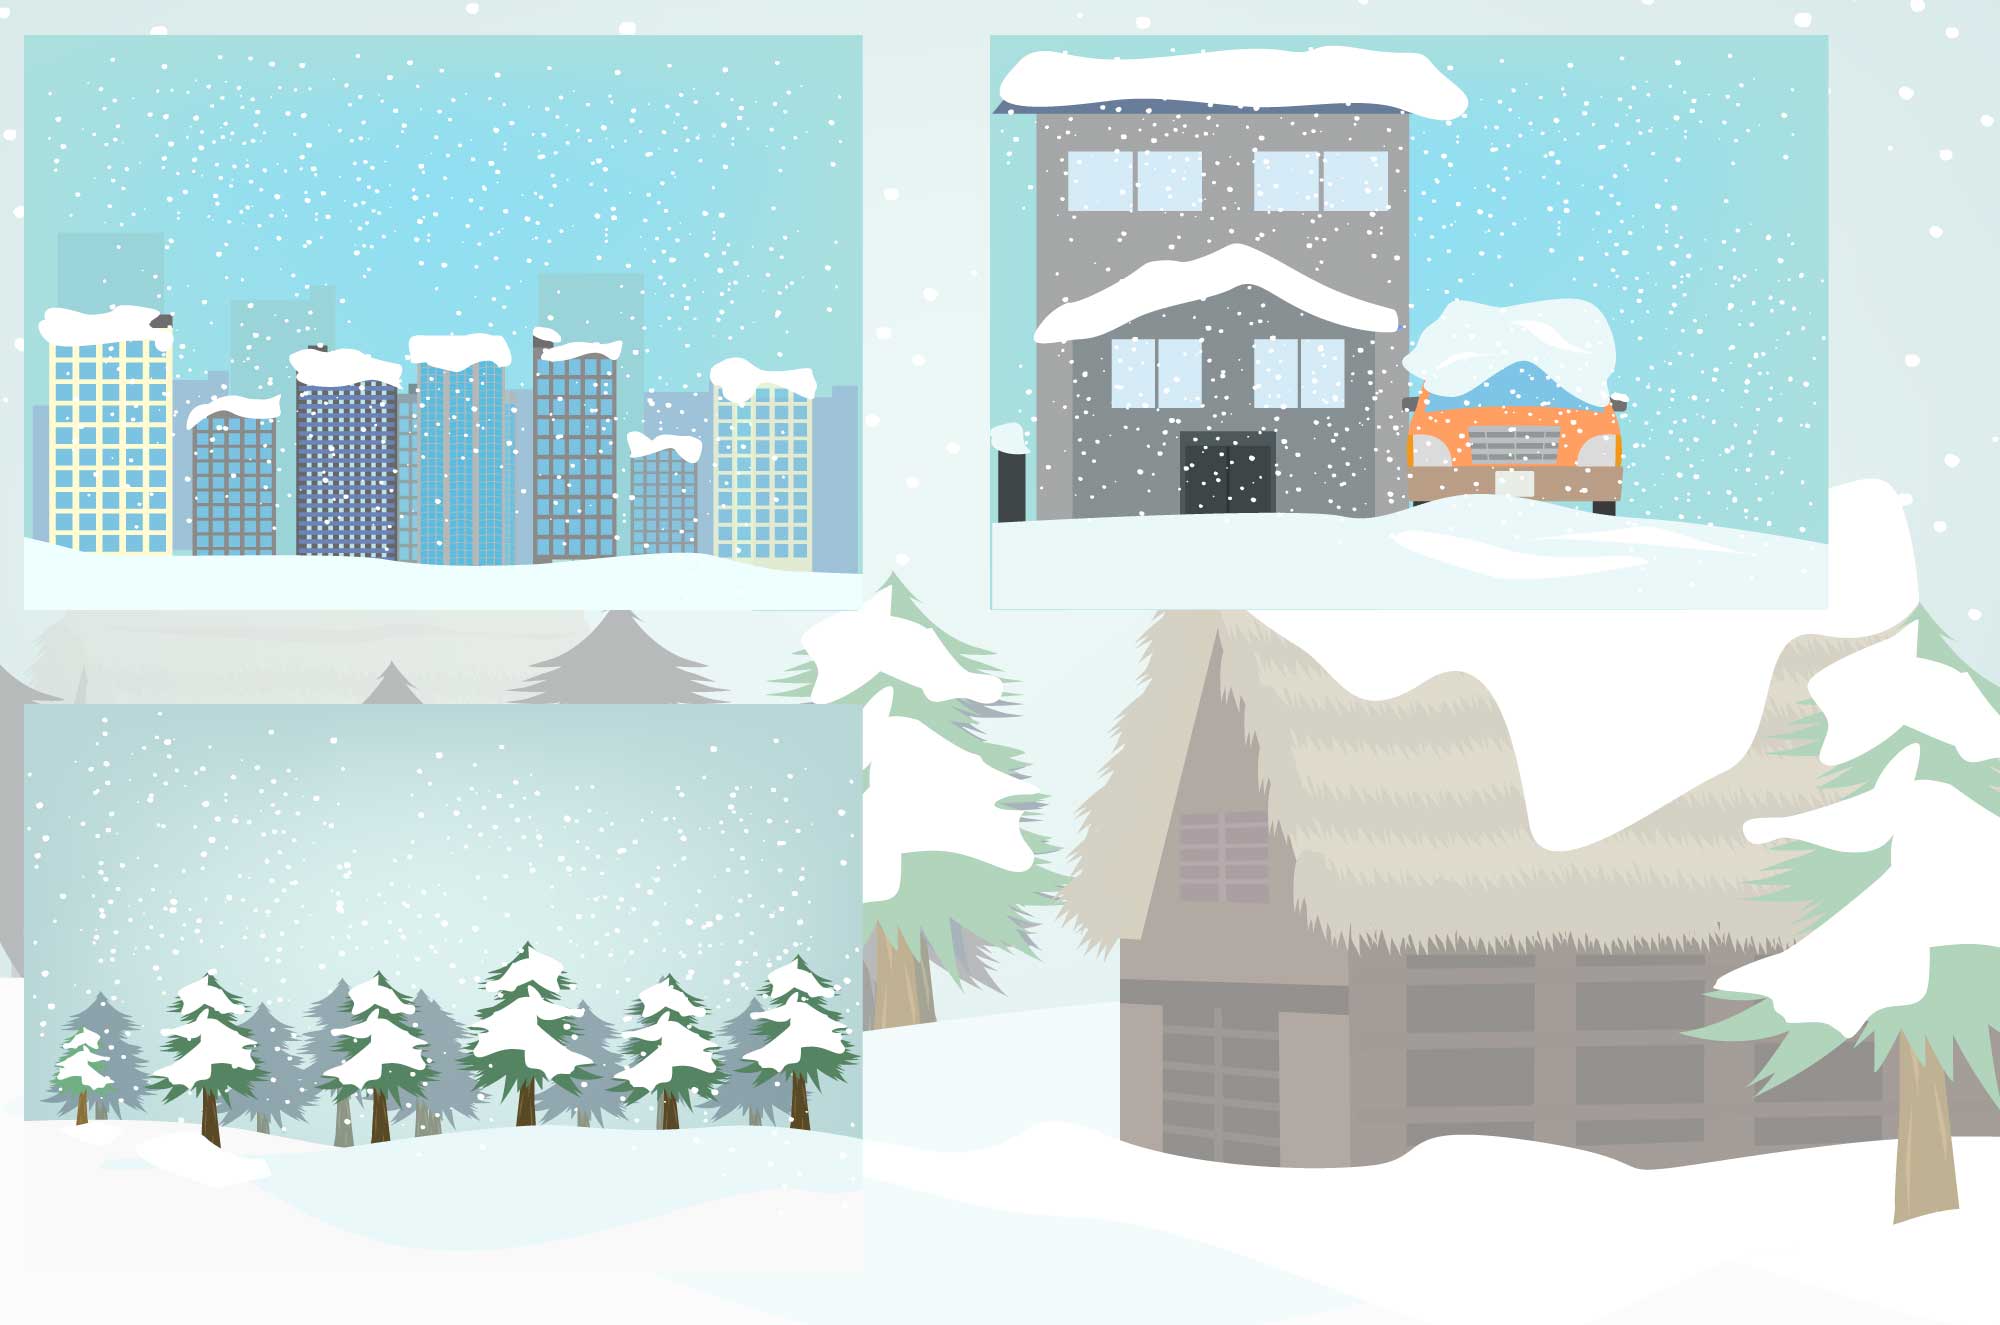 積雪と街並み 雪化粧の自然の風景イラスト チコデザ